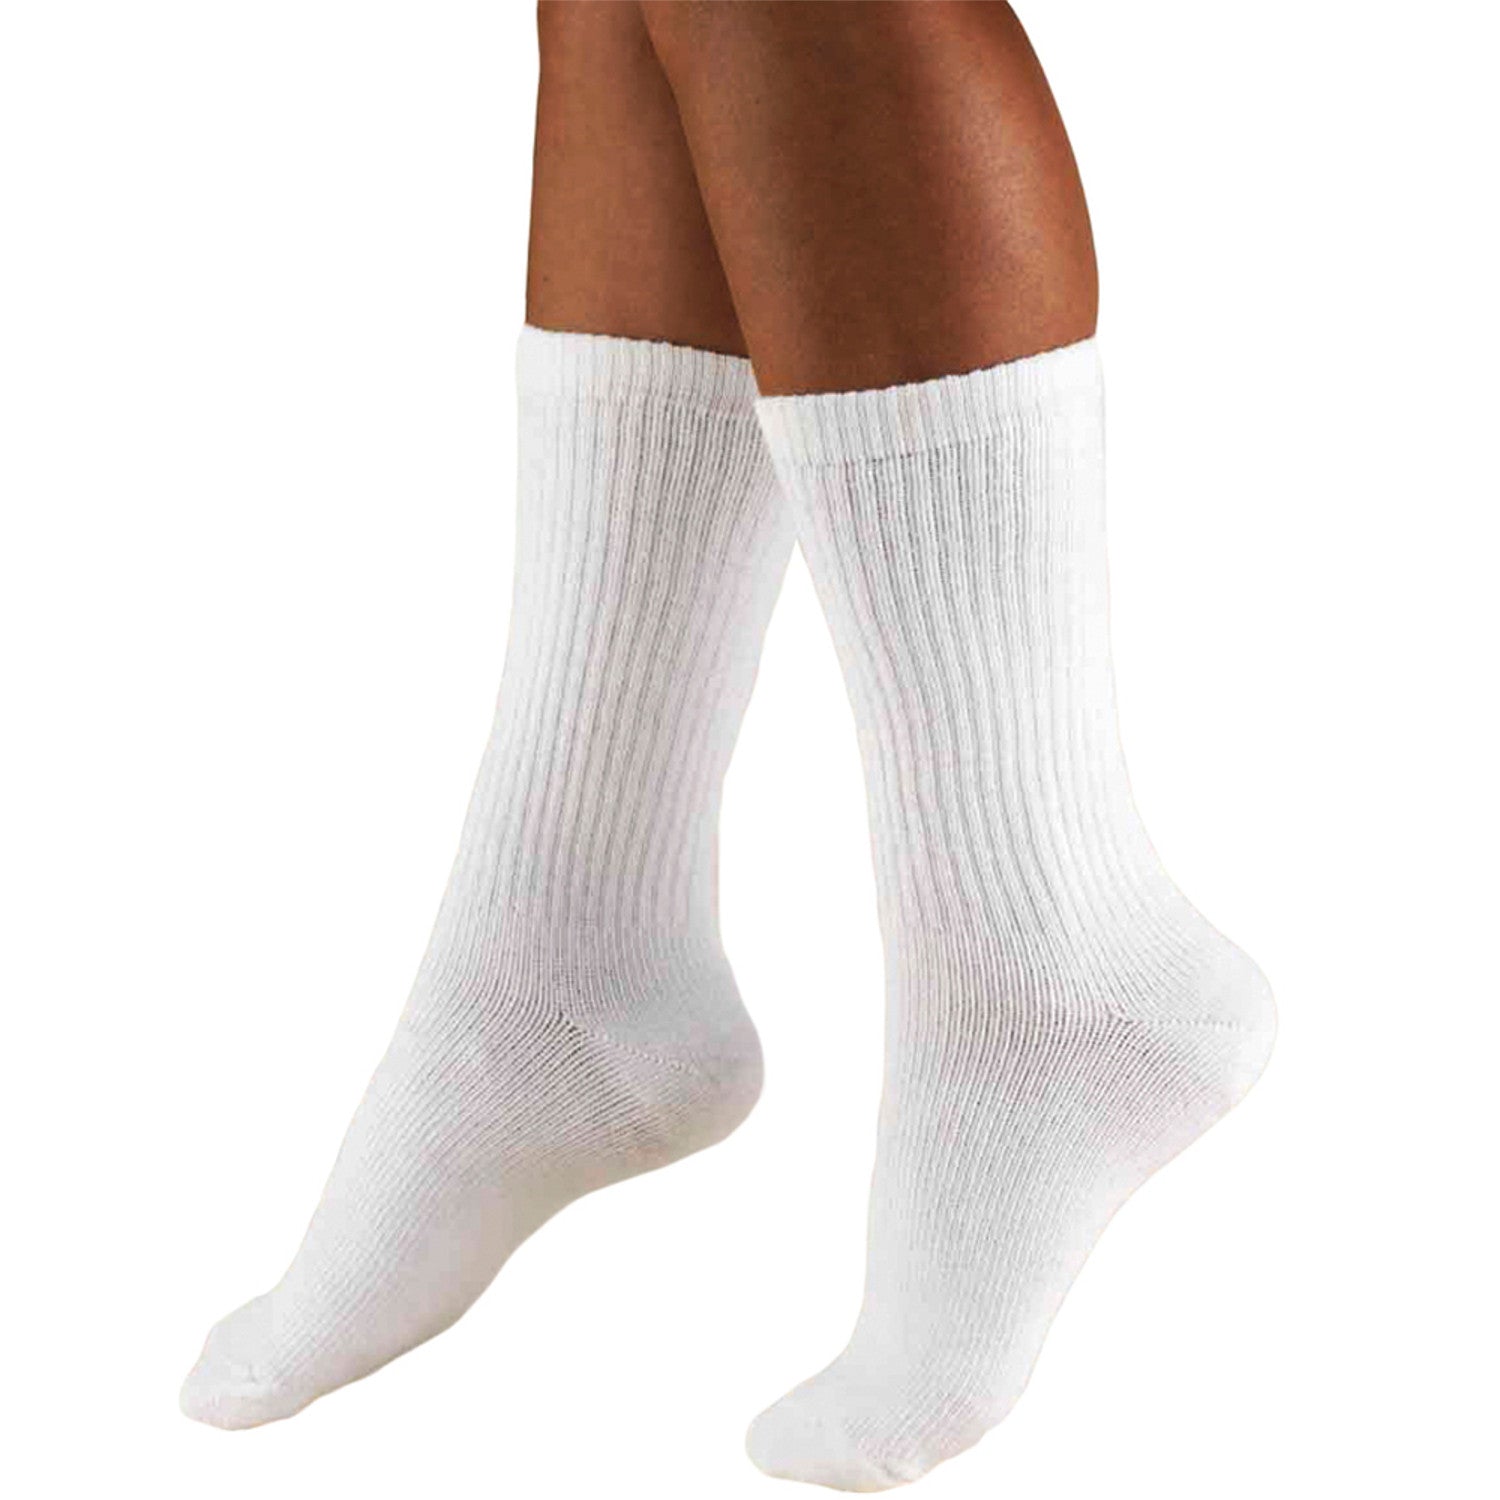 Men's Crew Length Casual Cushion Foot Socks